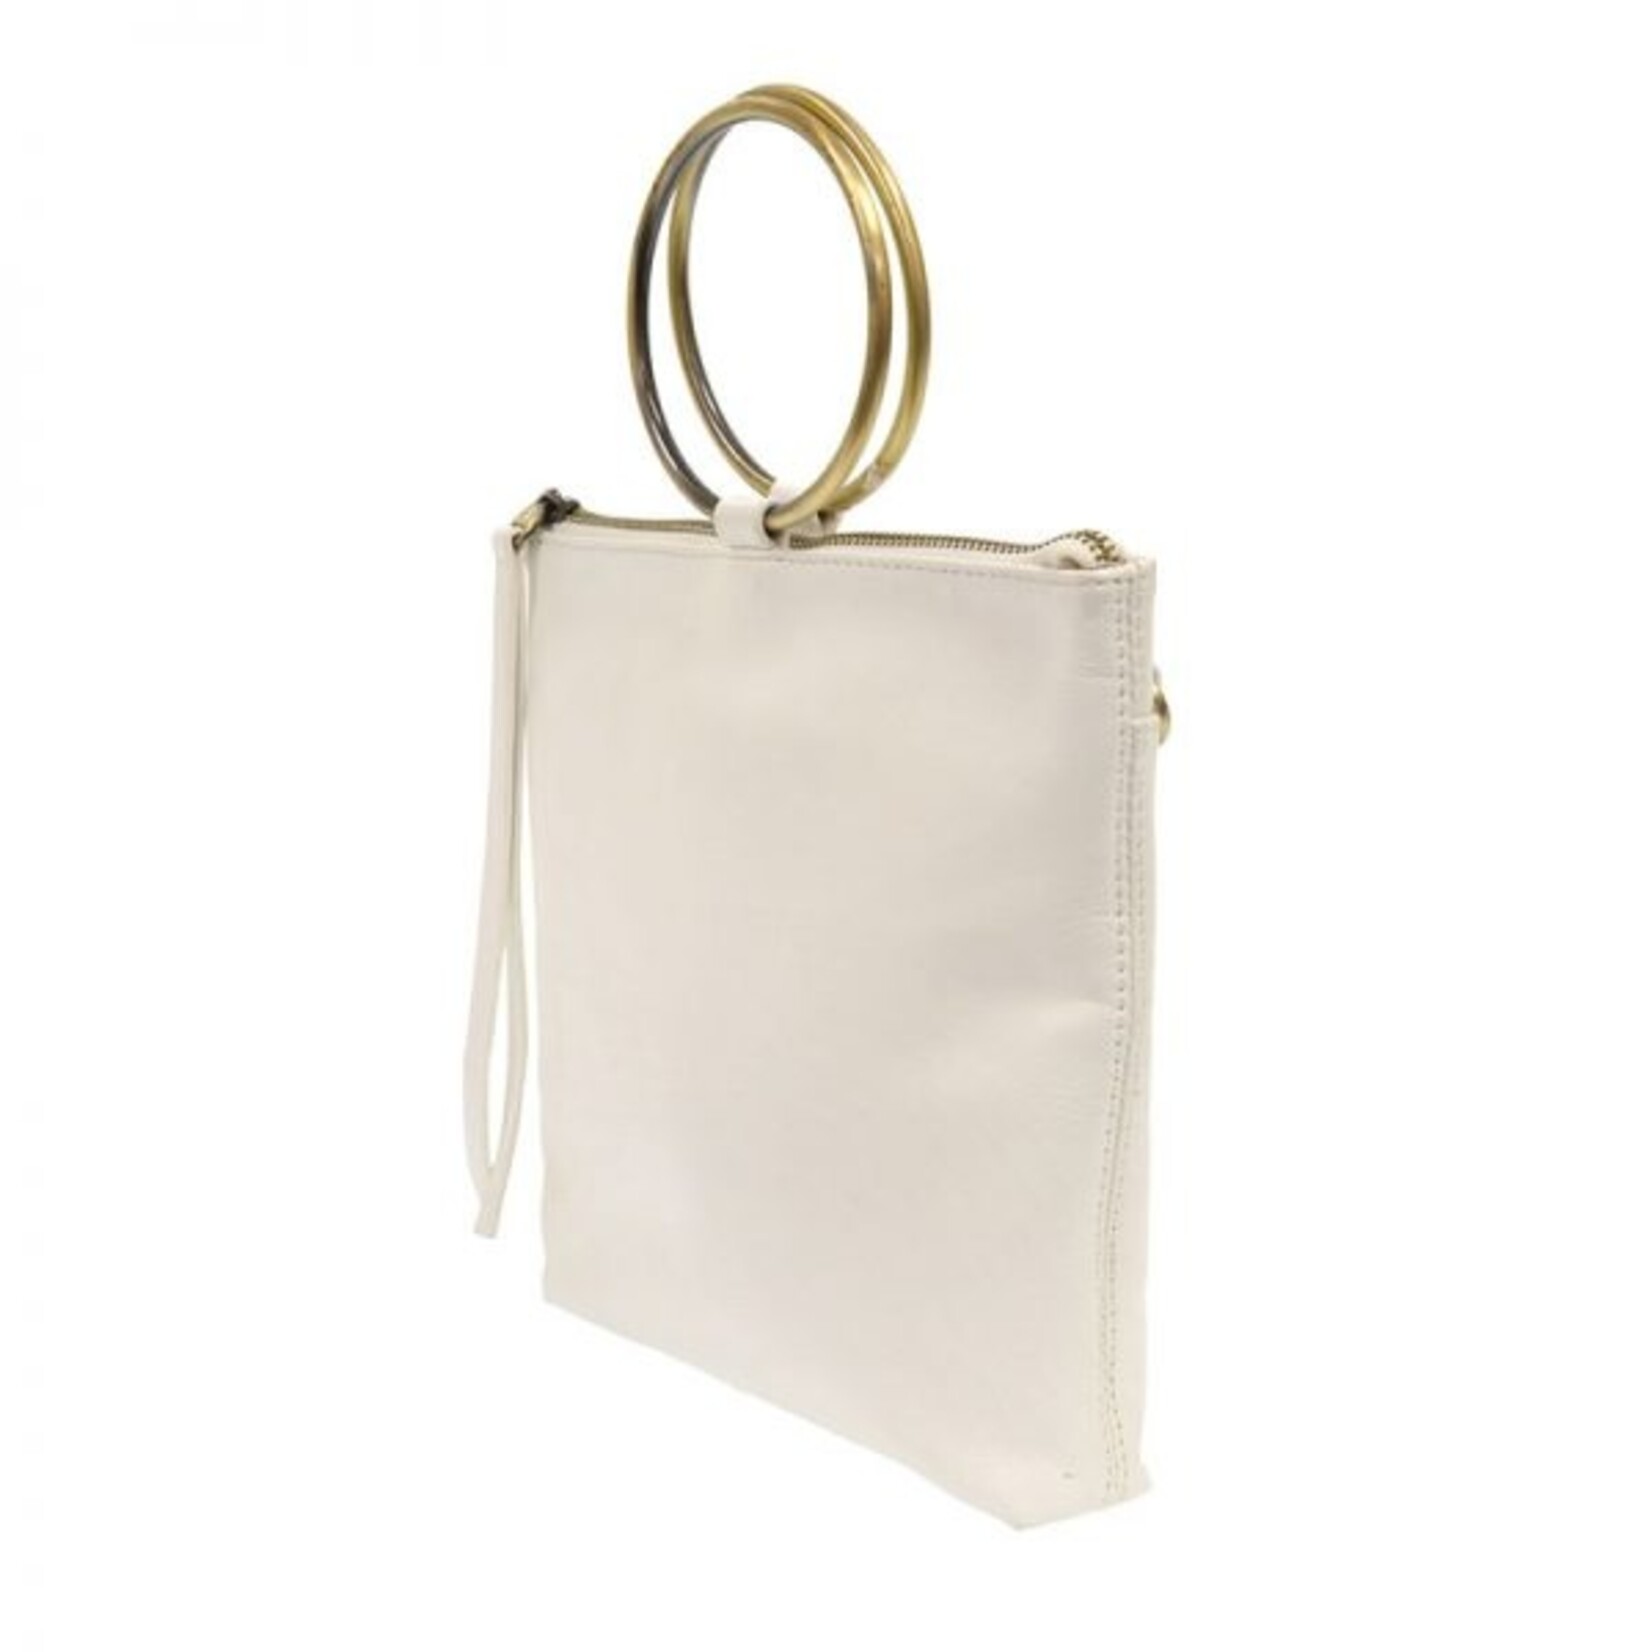 Joy Susan Amelia White Ring Handle Bag